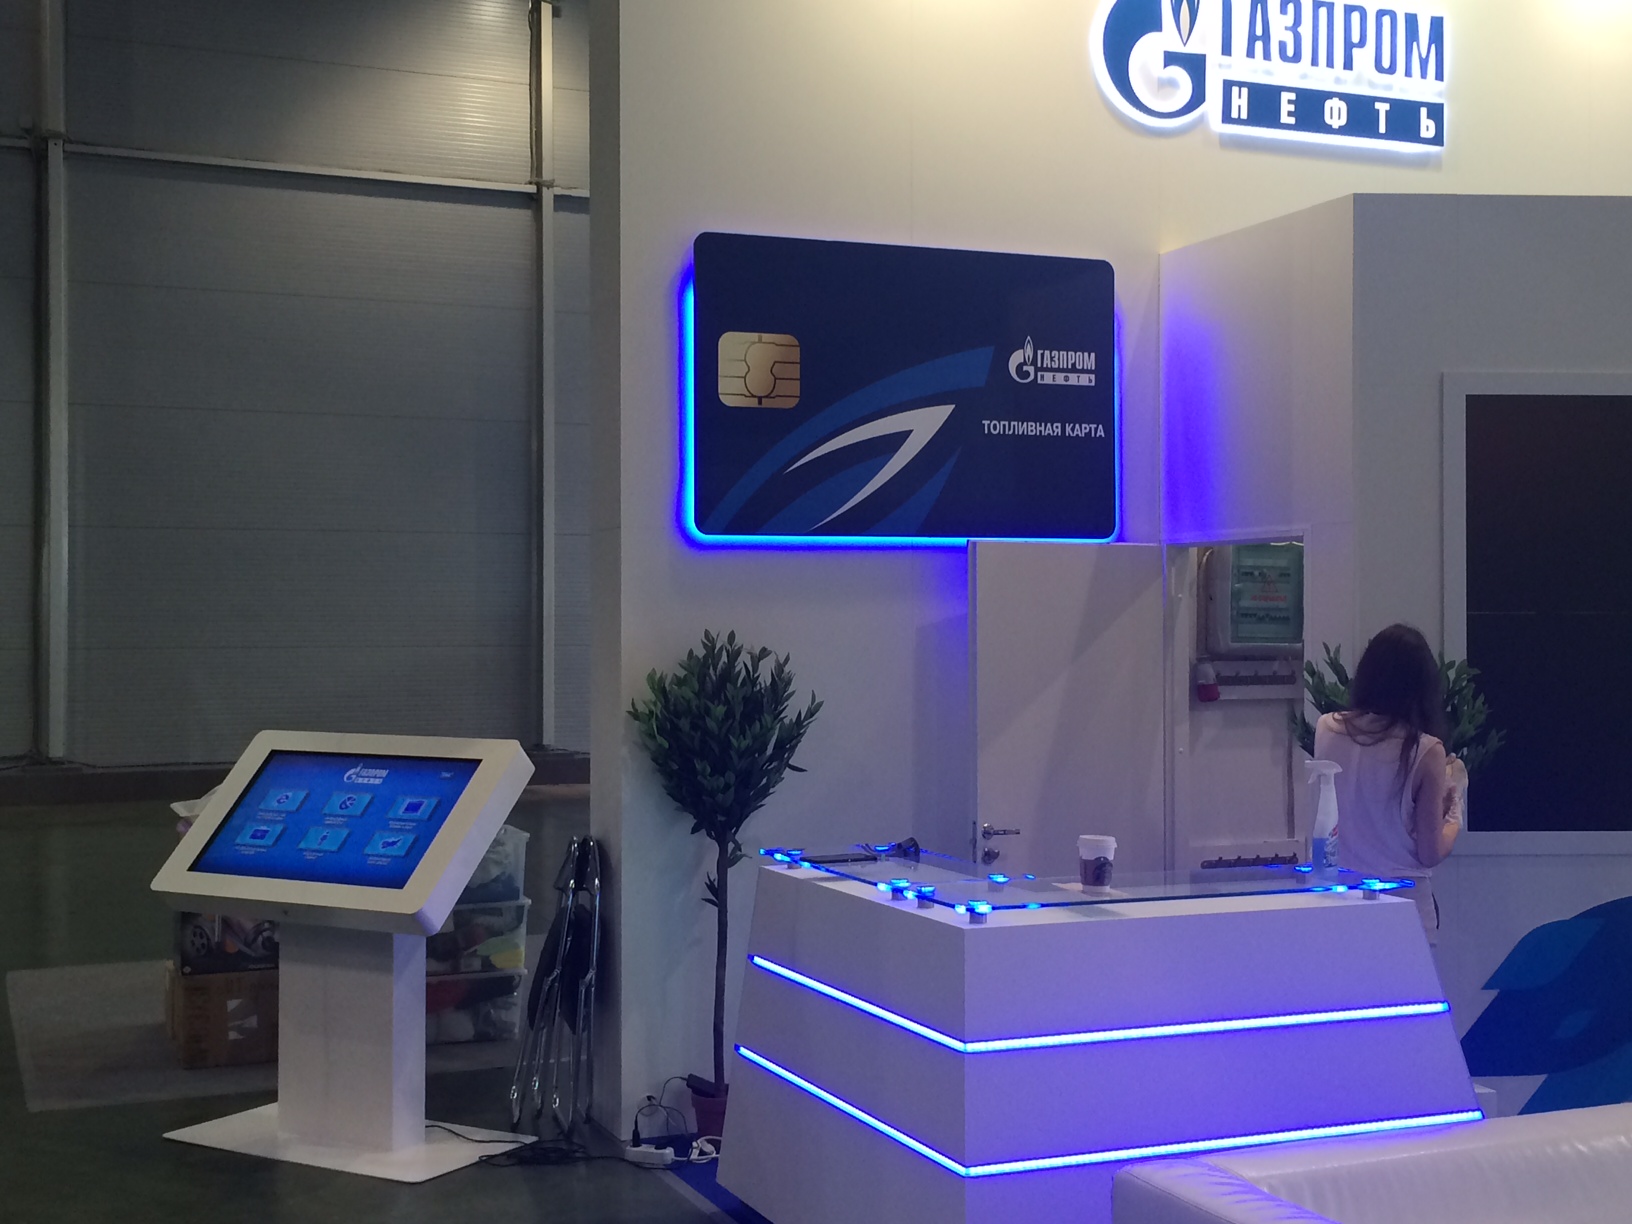 Специалисты компани APPOLLO DIGITAL в сотрудничестве с компаний ITDILAB осуществили комплексную застройку стенда корпорации " Газпром" для выставки